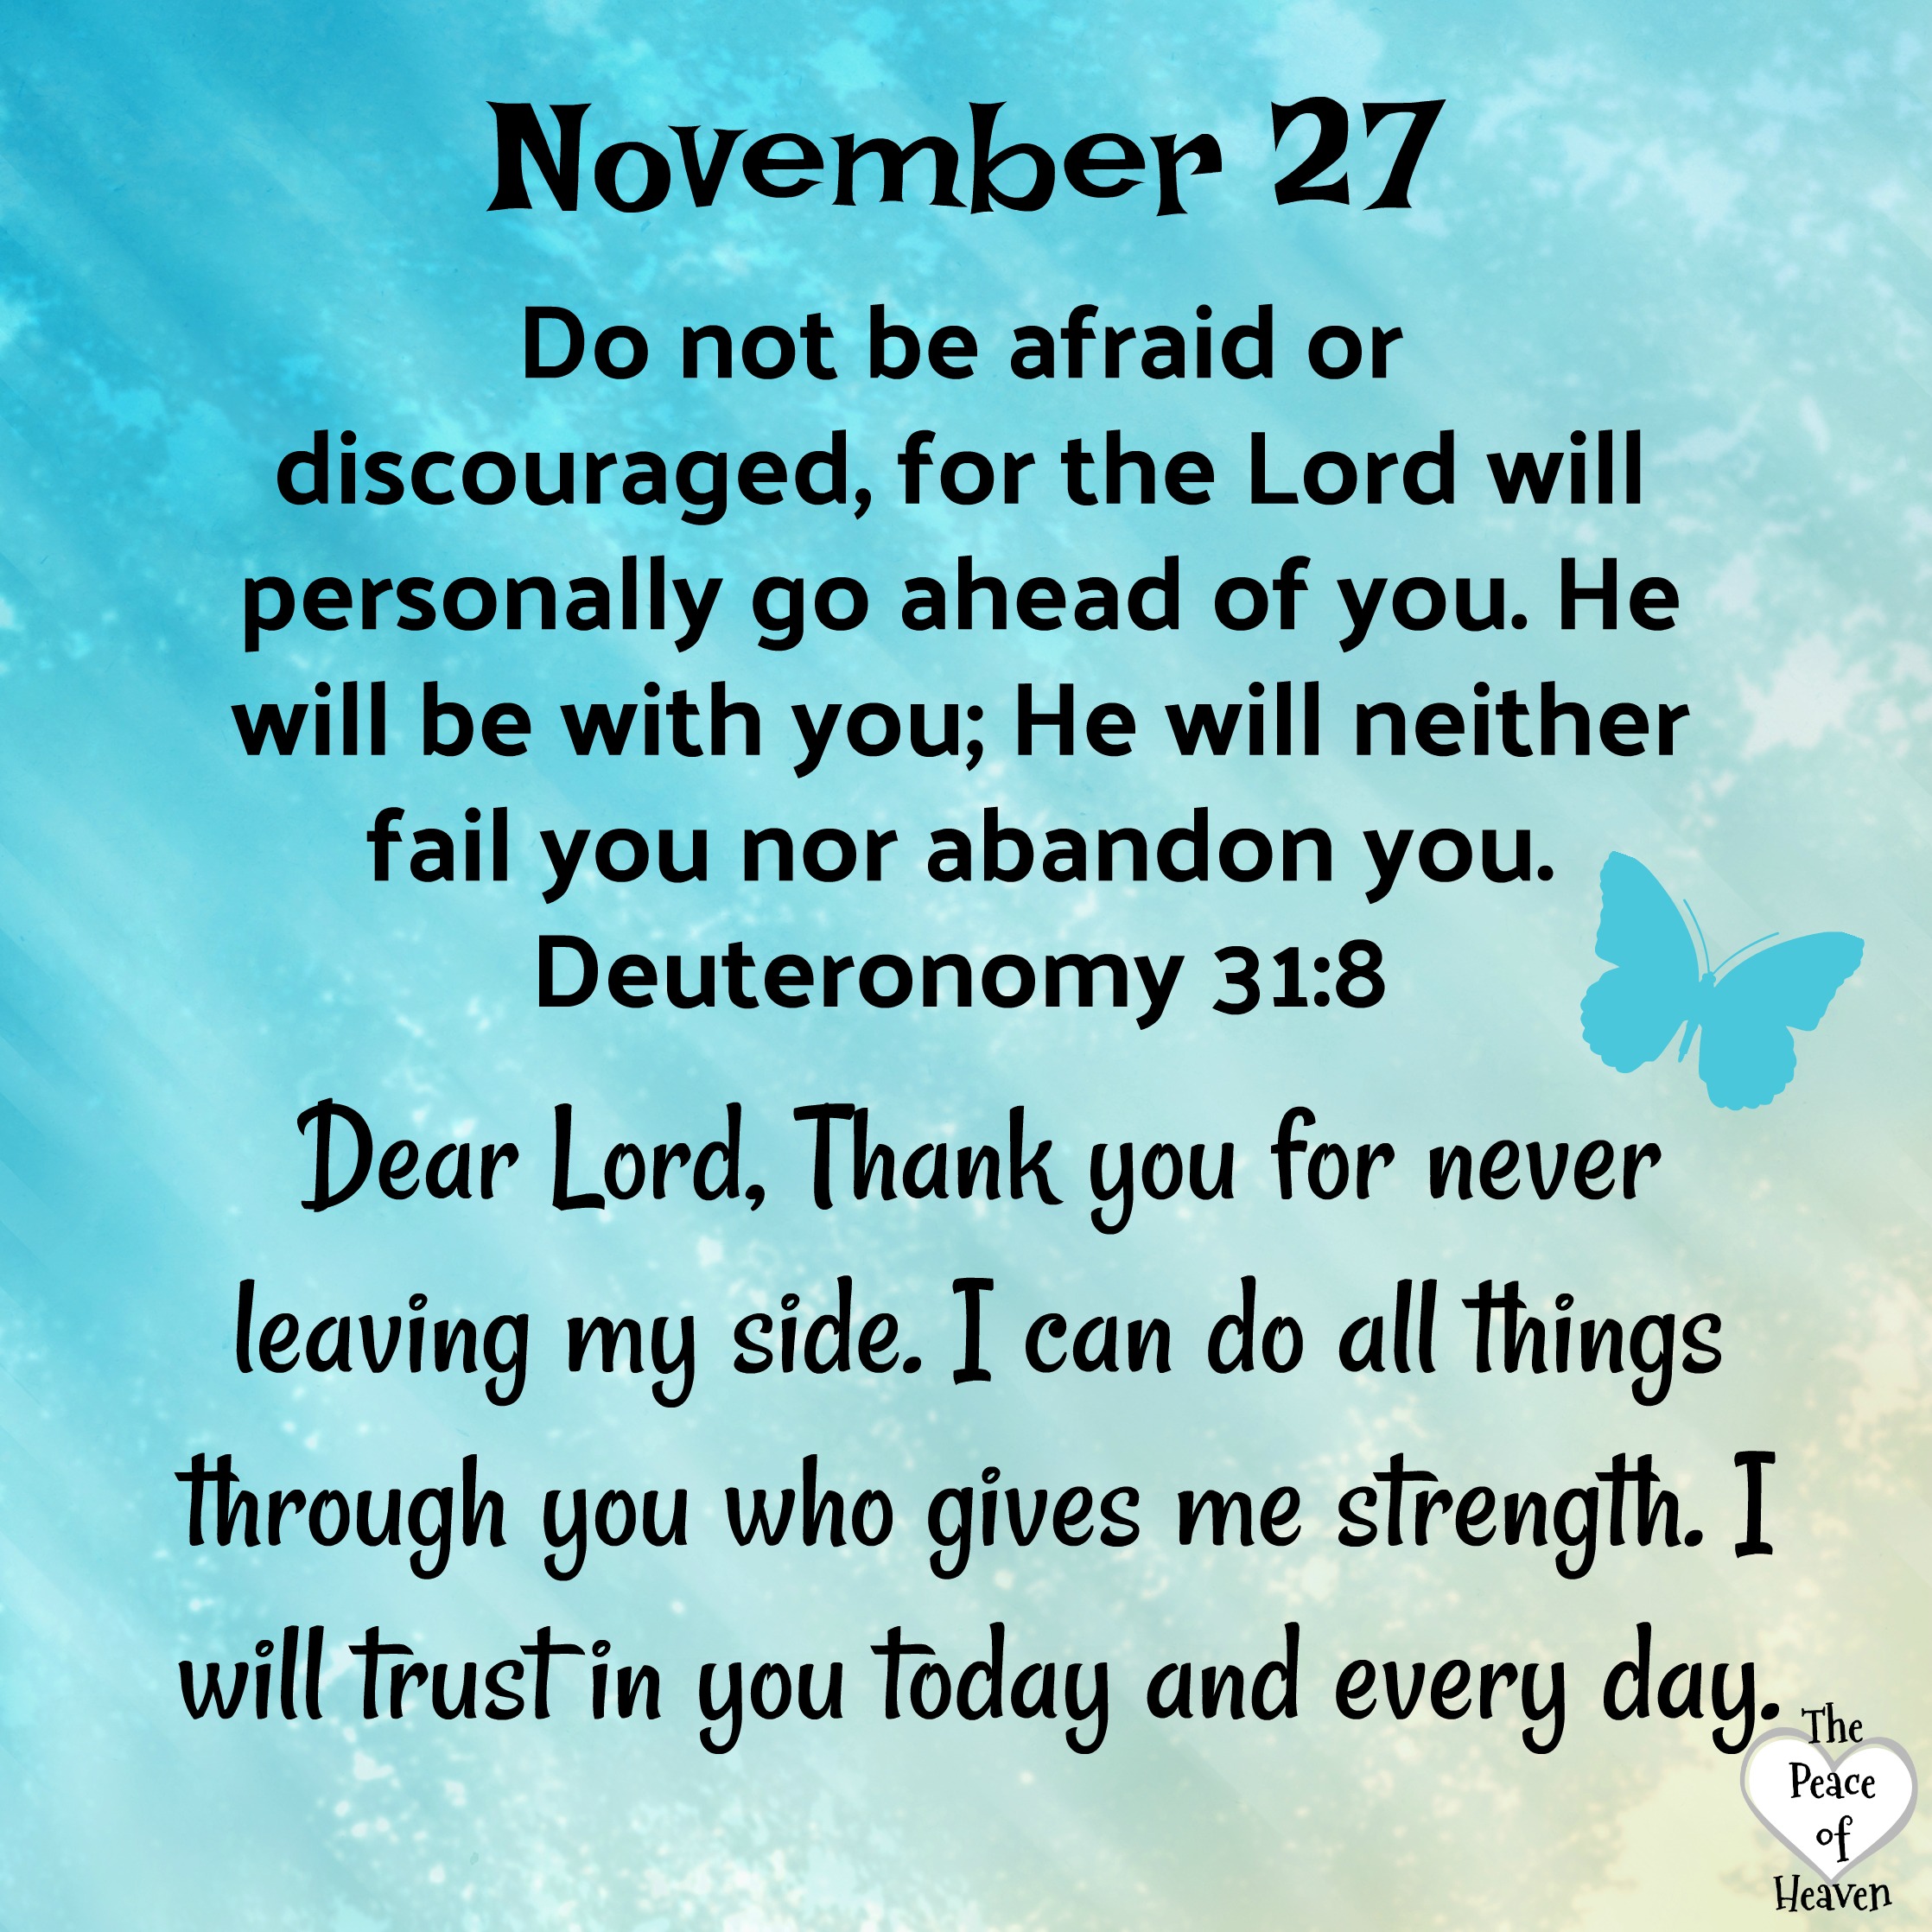 November 27 – The Peace of Heaven